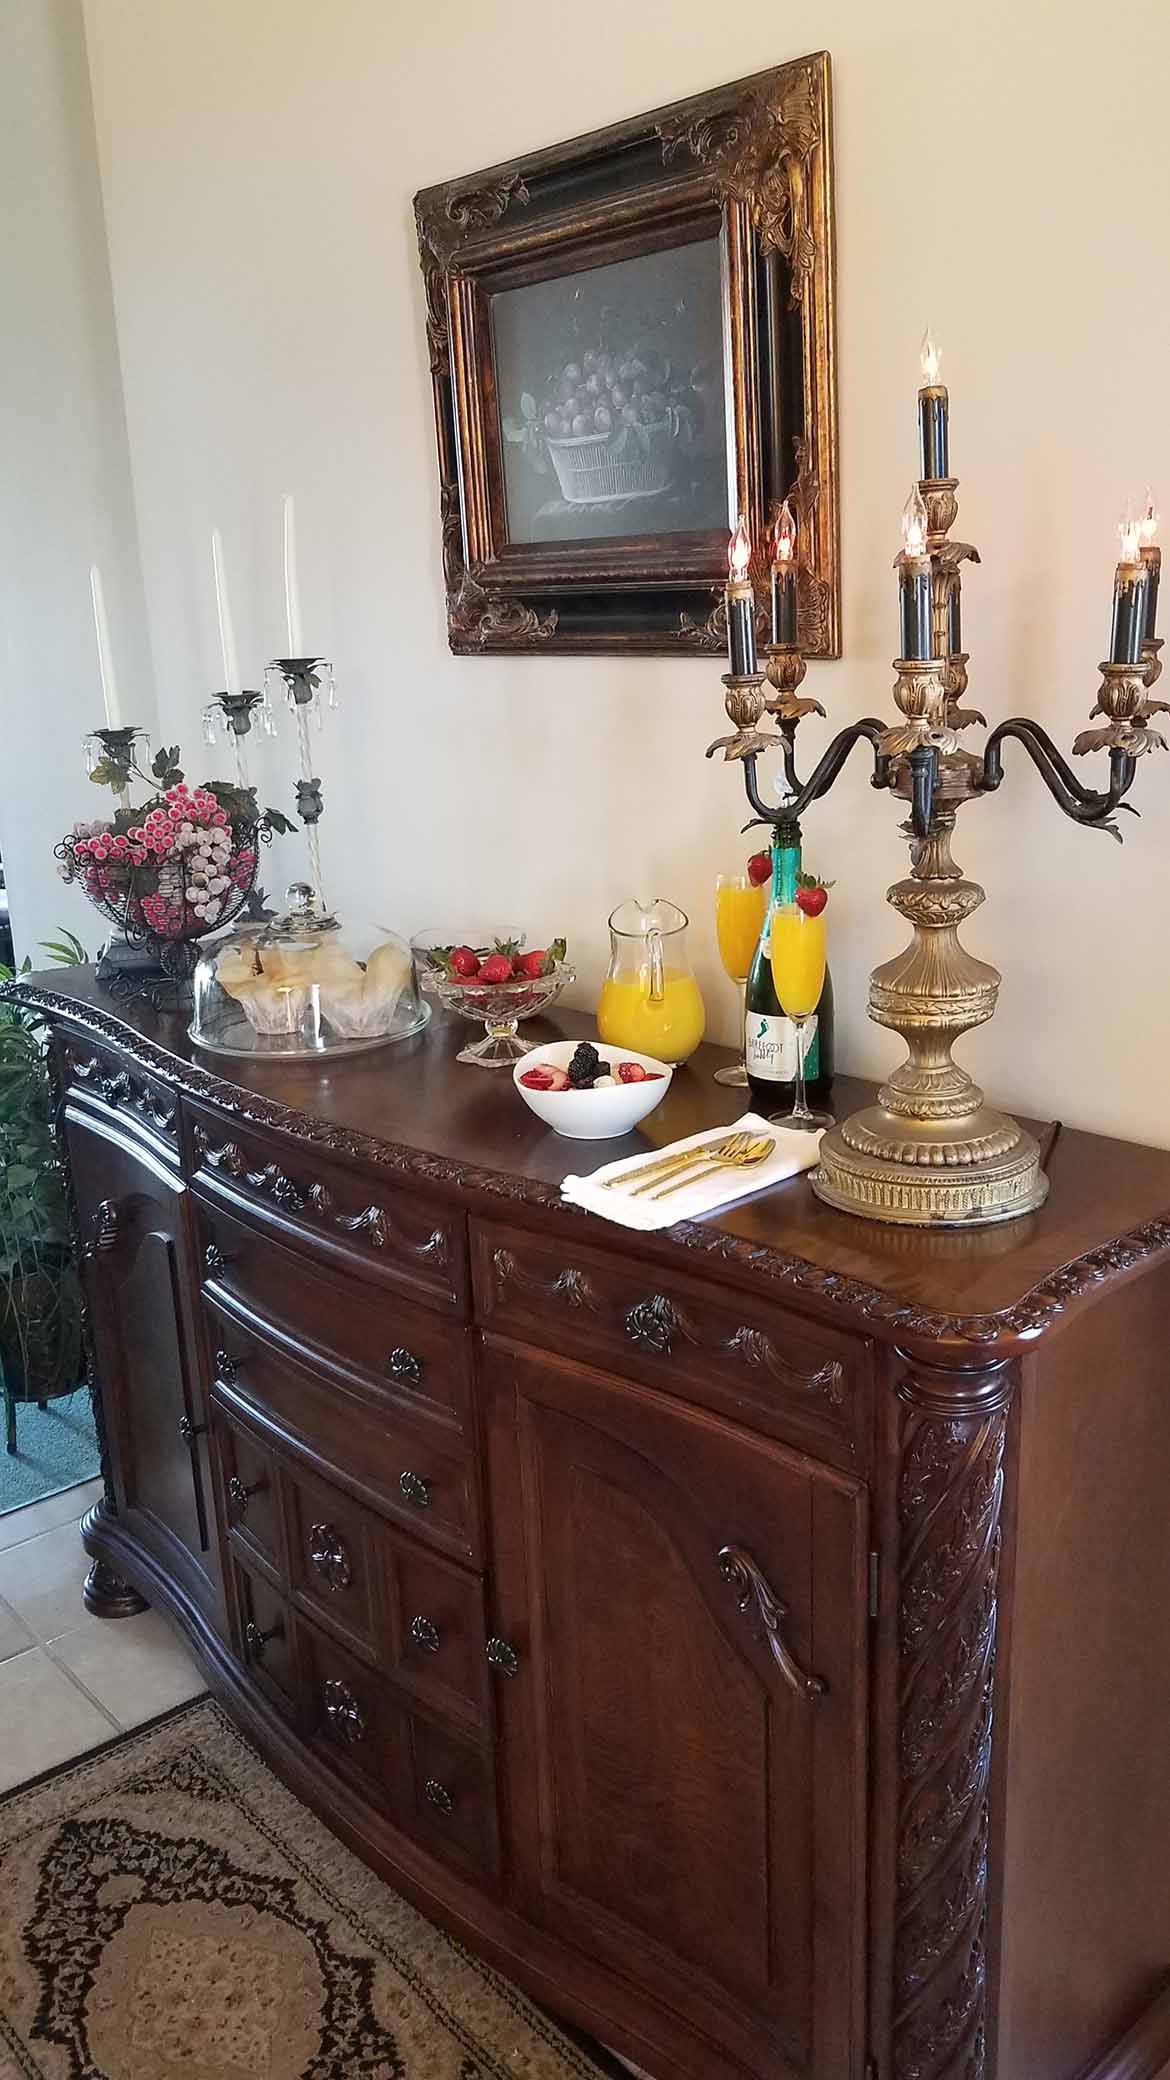 Tuscan Manor Colazione (Breakfast) Table